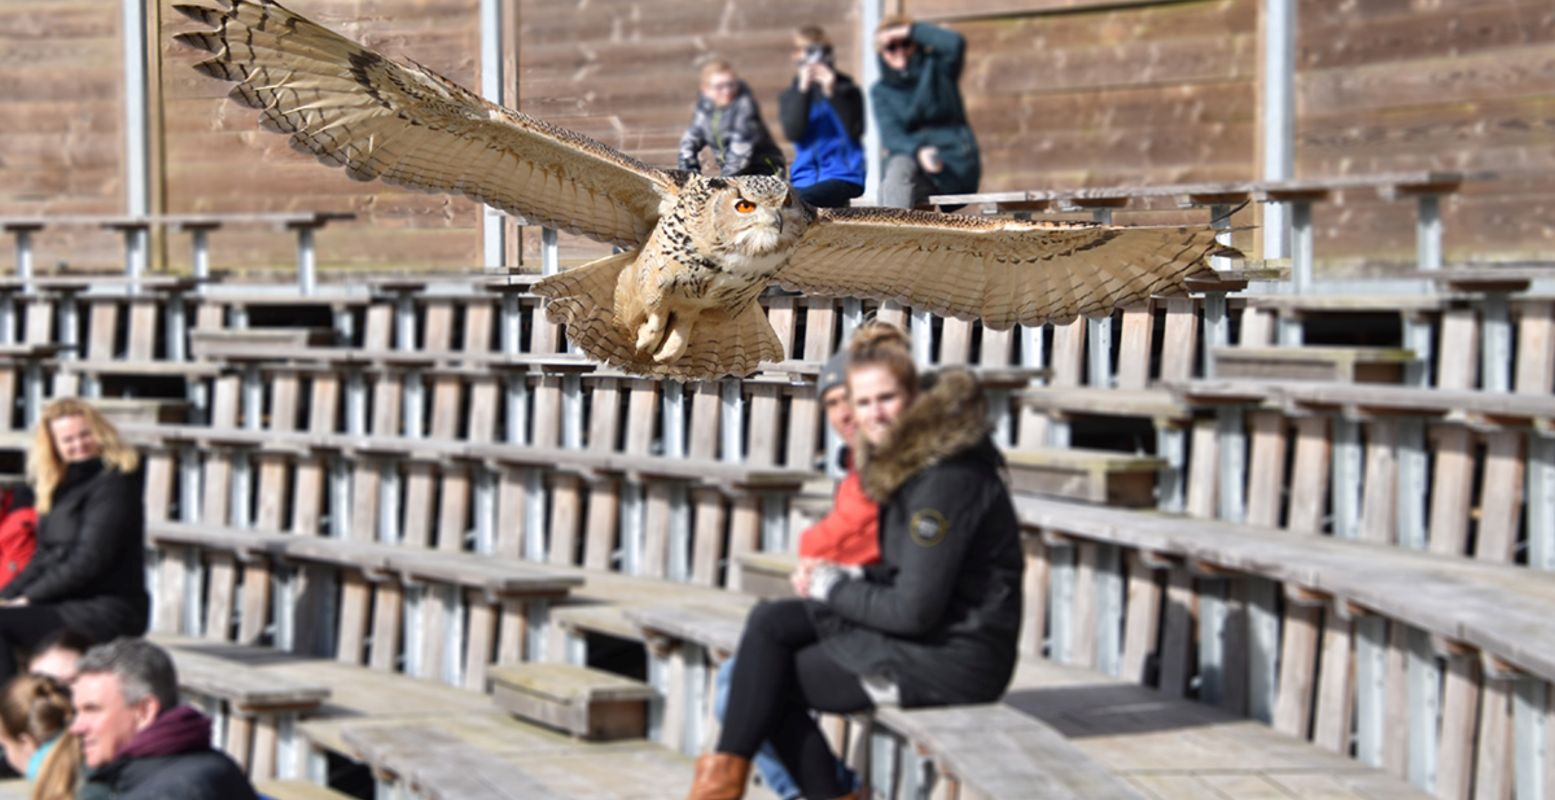 Bezoek een toffe roofvogelshow op Tweede Pinksterdag in het prachtige dierenpark Hoenderdaell. Foto: Landgoed Hoenderdaell